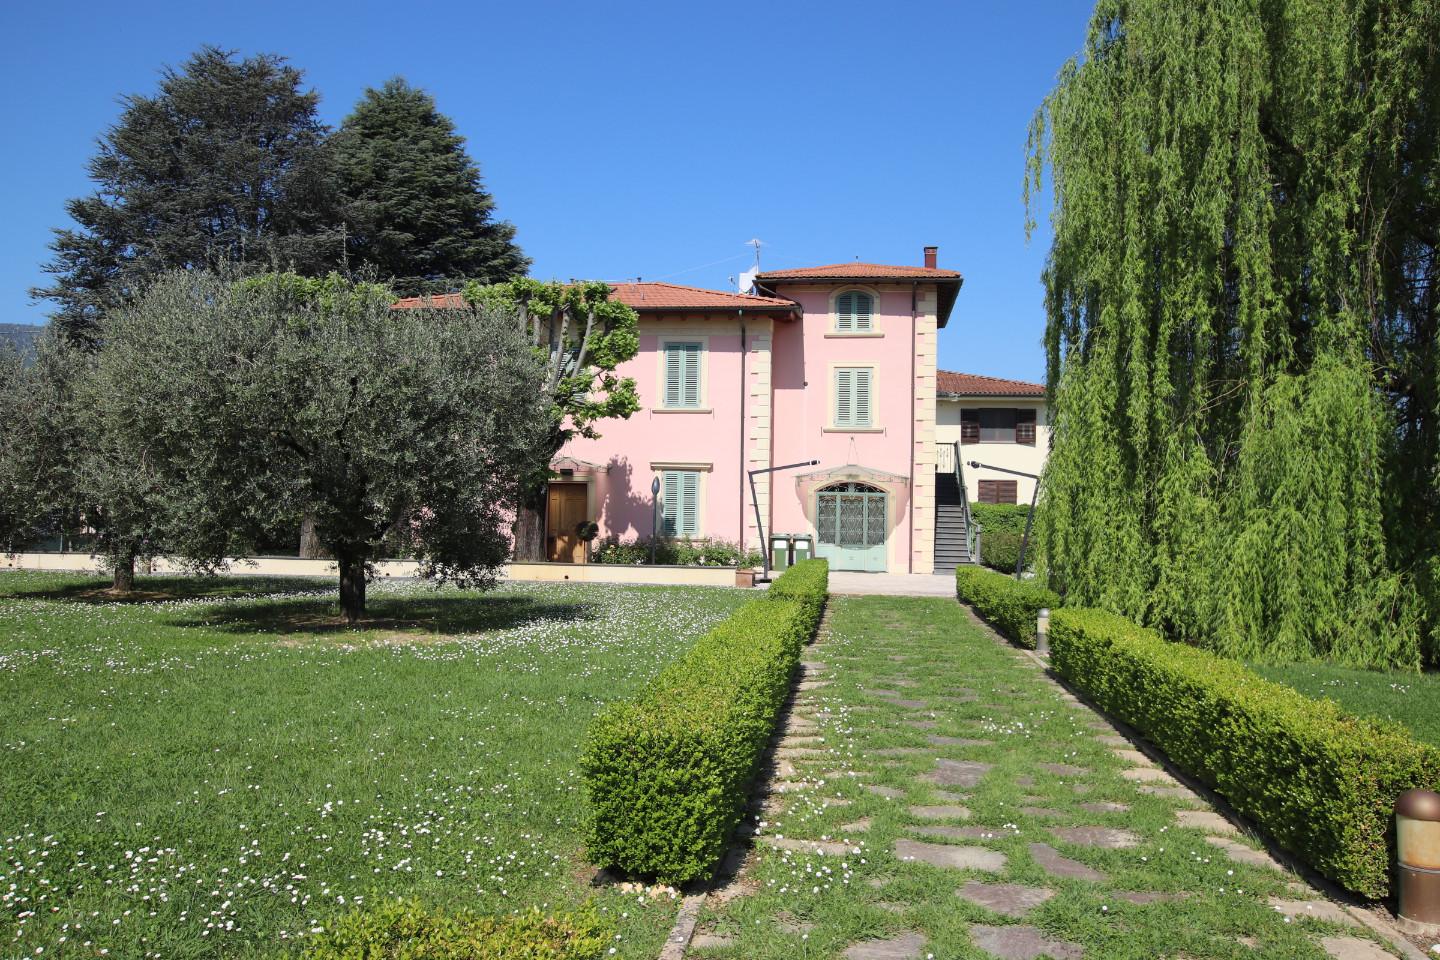 Ufficio in vendita a Lucca